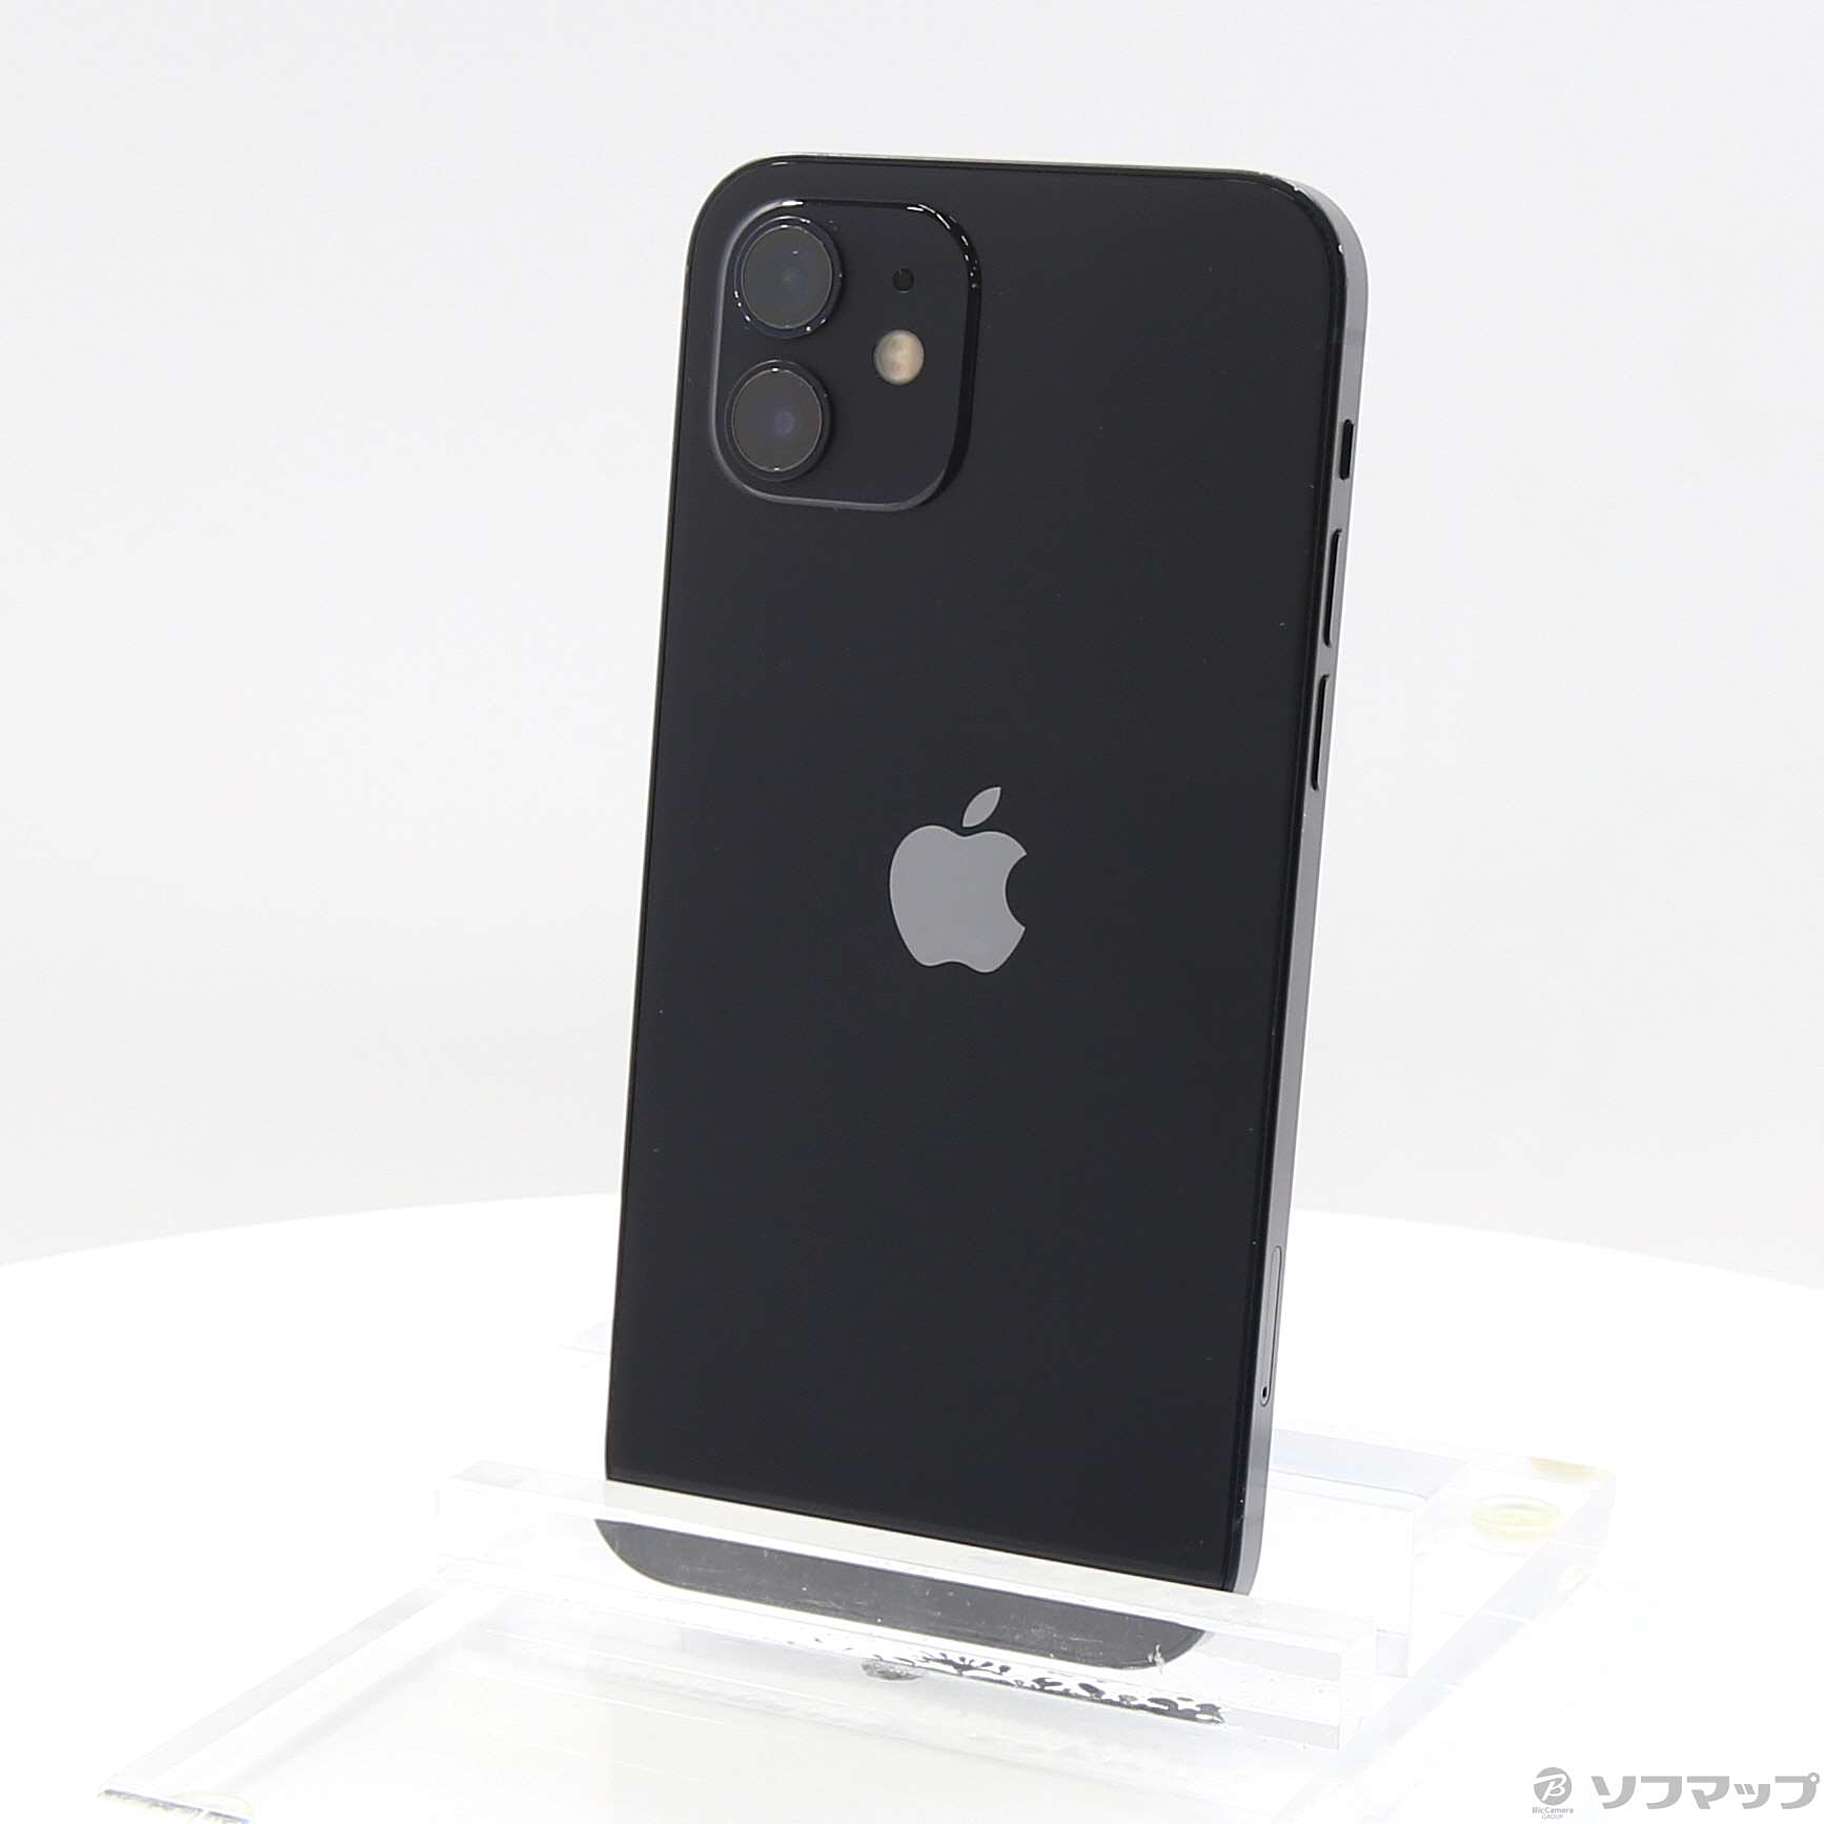 アップル iPhone12 128GB ブラック